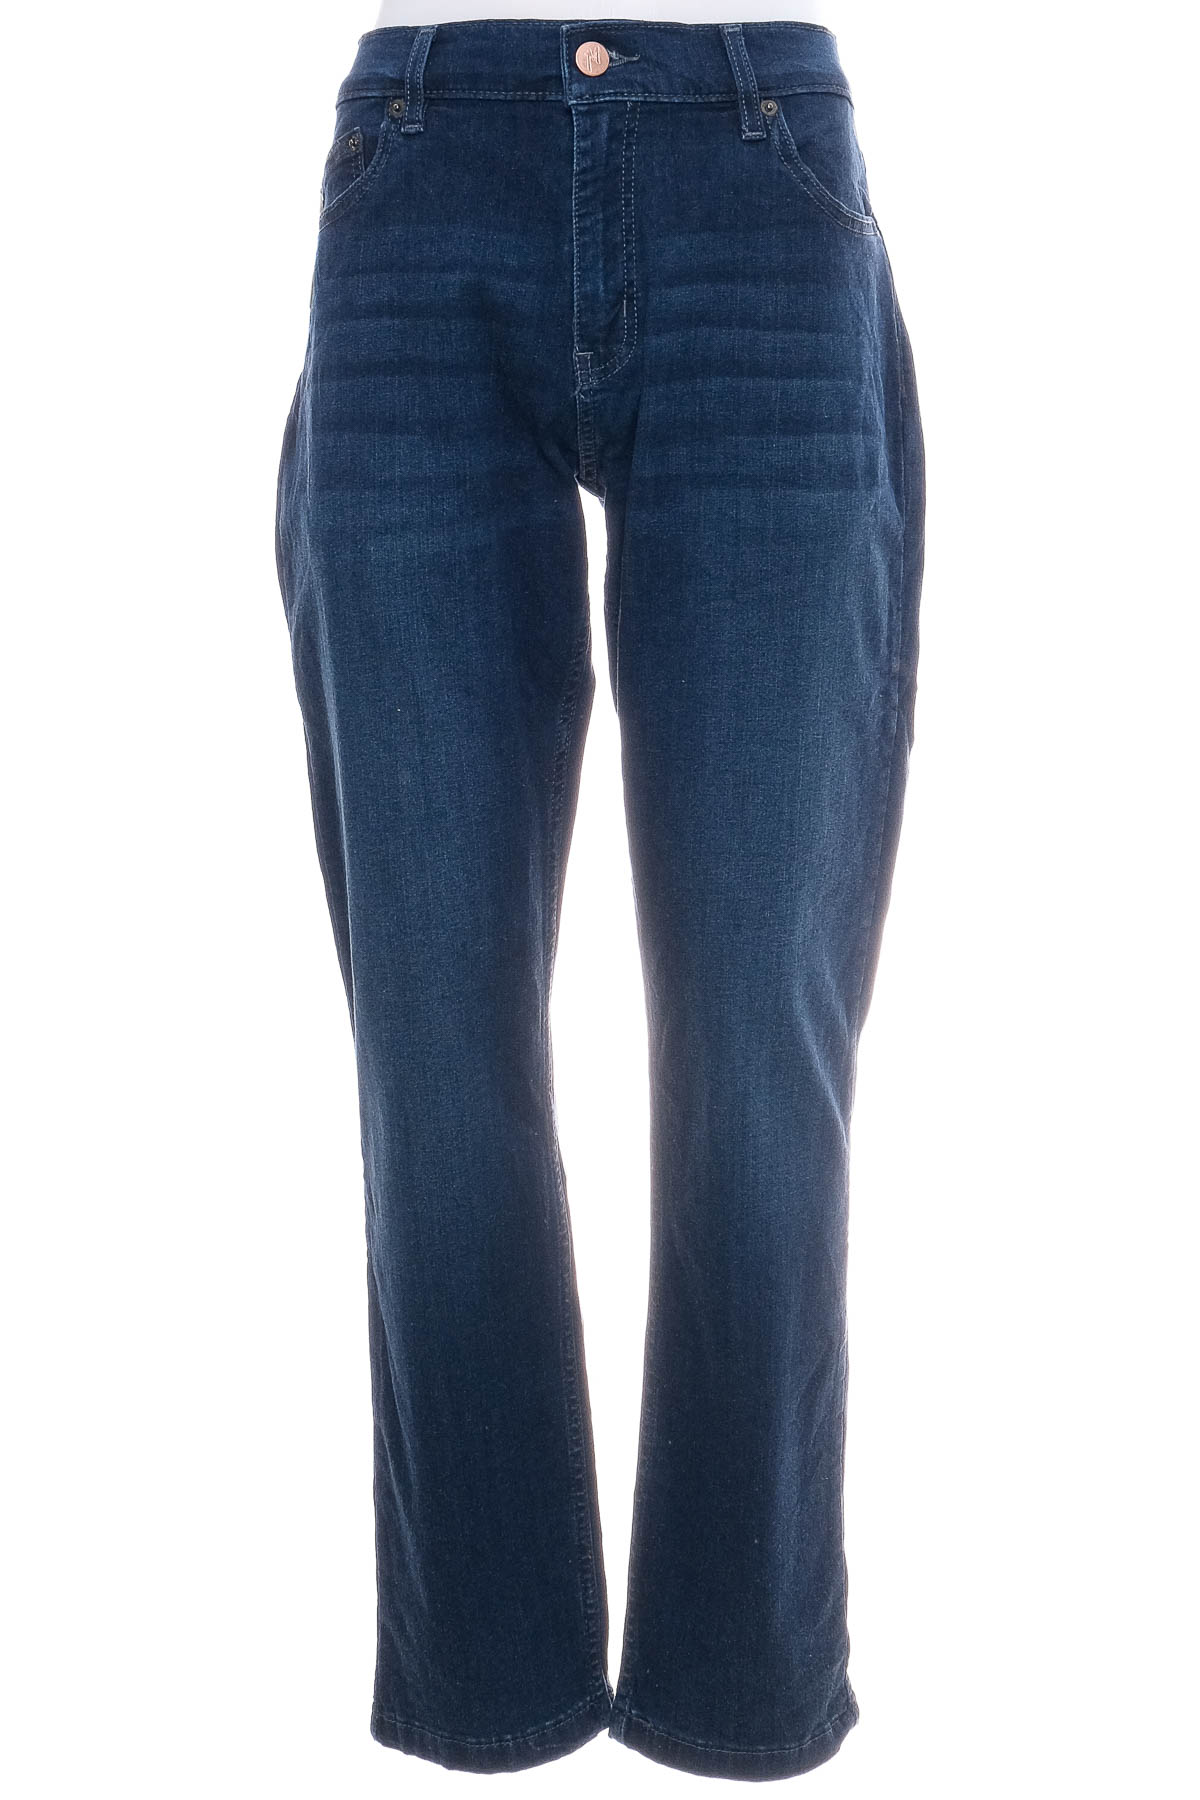 Męskie dżinsy - Mugsy Jeans - 0